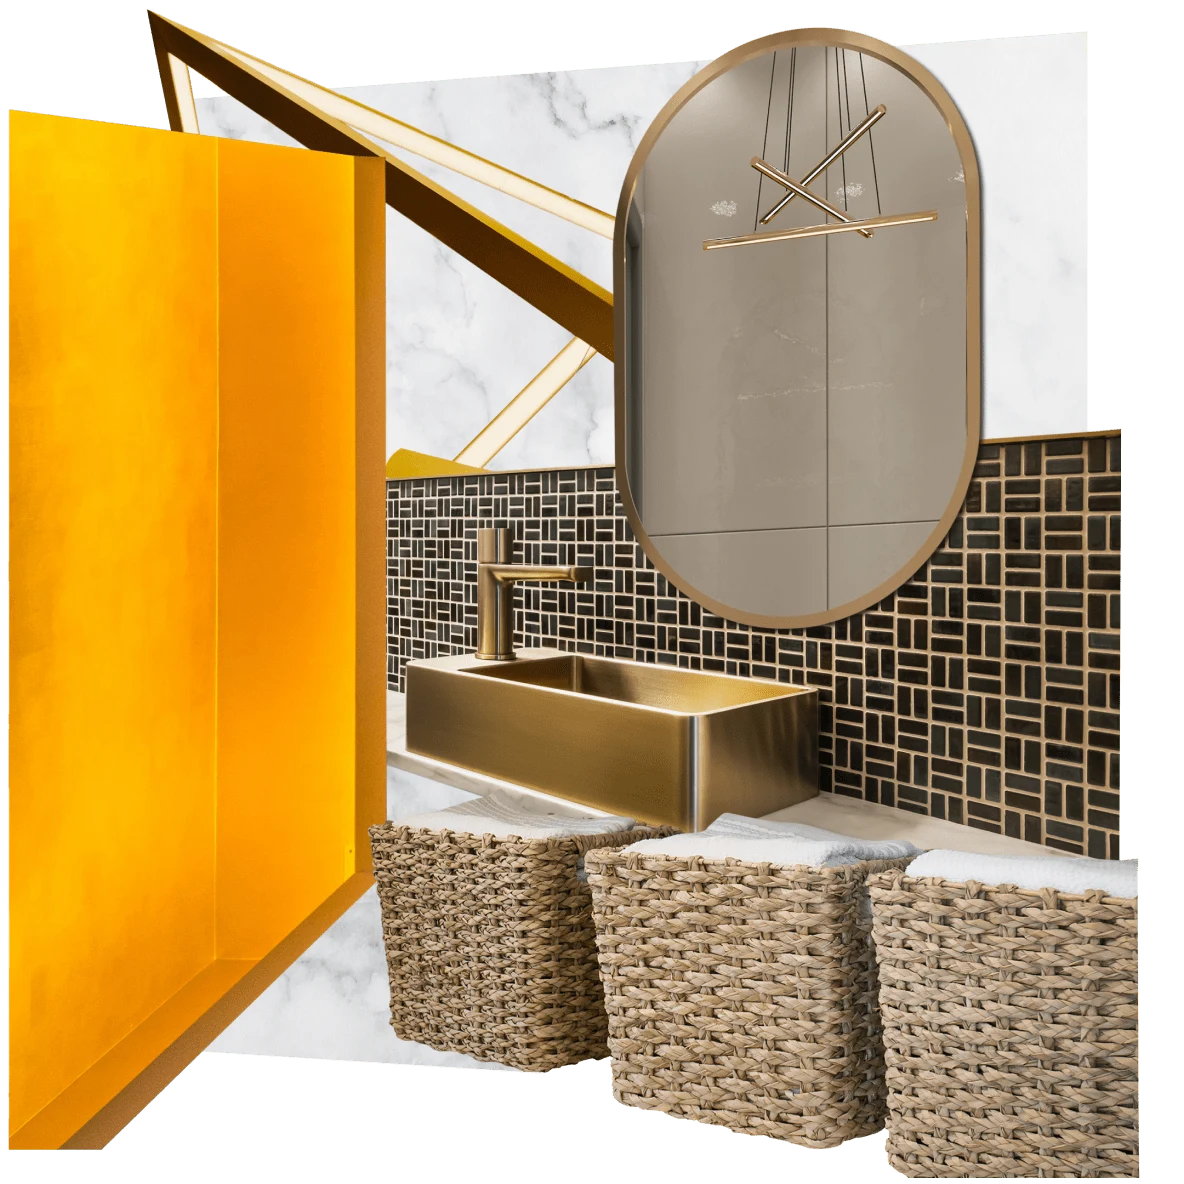 Collage de artículos modernos de cuarto de lavado: cestas de mimbre para la ropa sucia, pared de azulejos negros y dorados con lavabo cuadrado dorado, espejo redondeado que sale de una pared naranja.